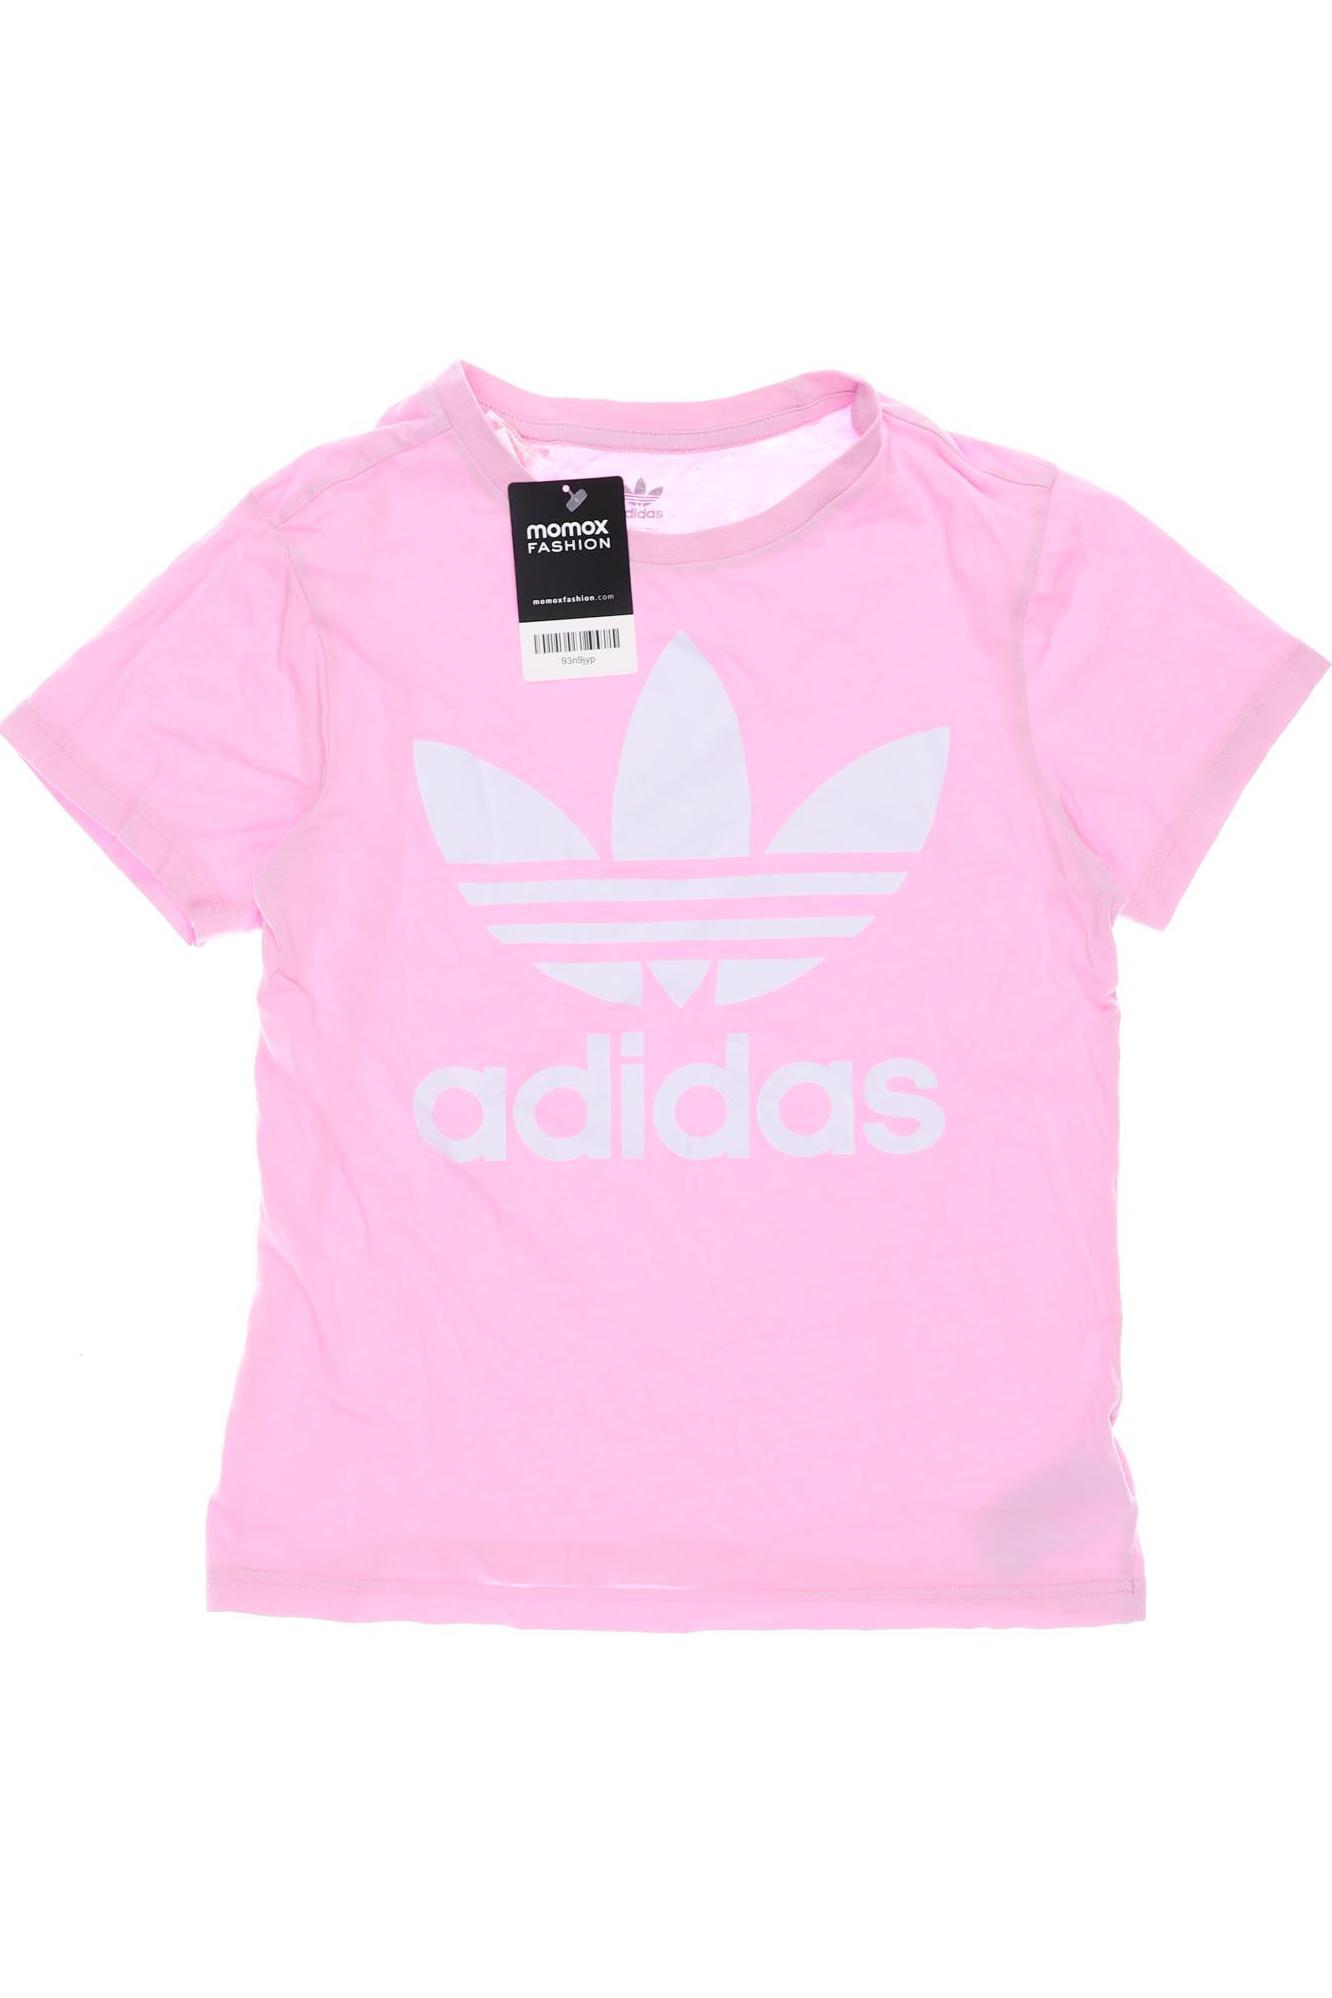 adidas Originals Mädchen T-Shirt, pink von adidas Originals